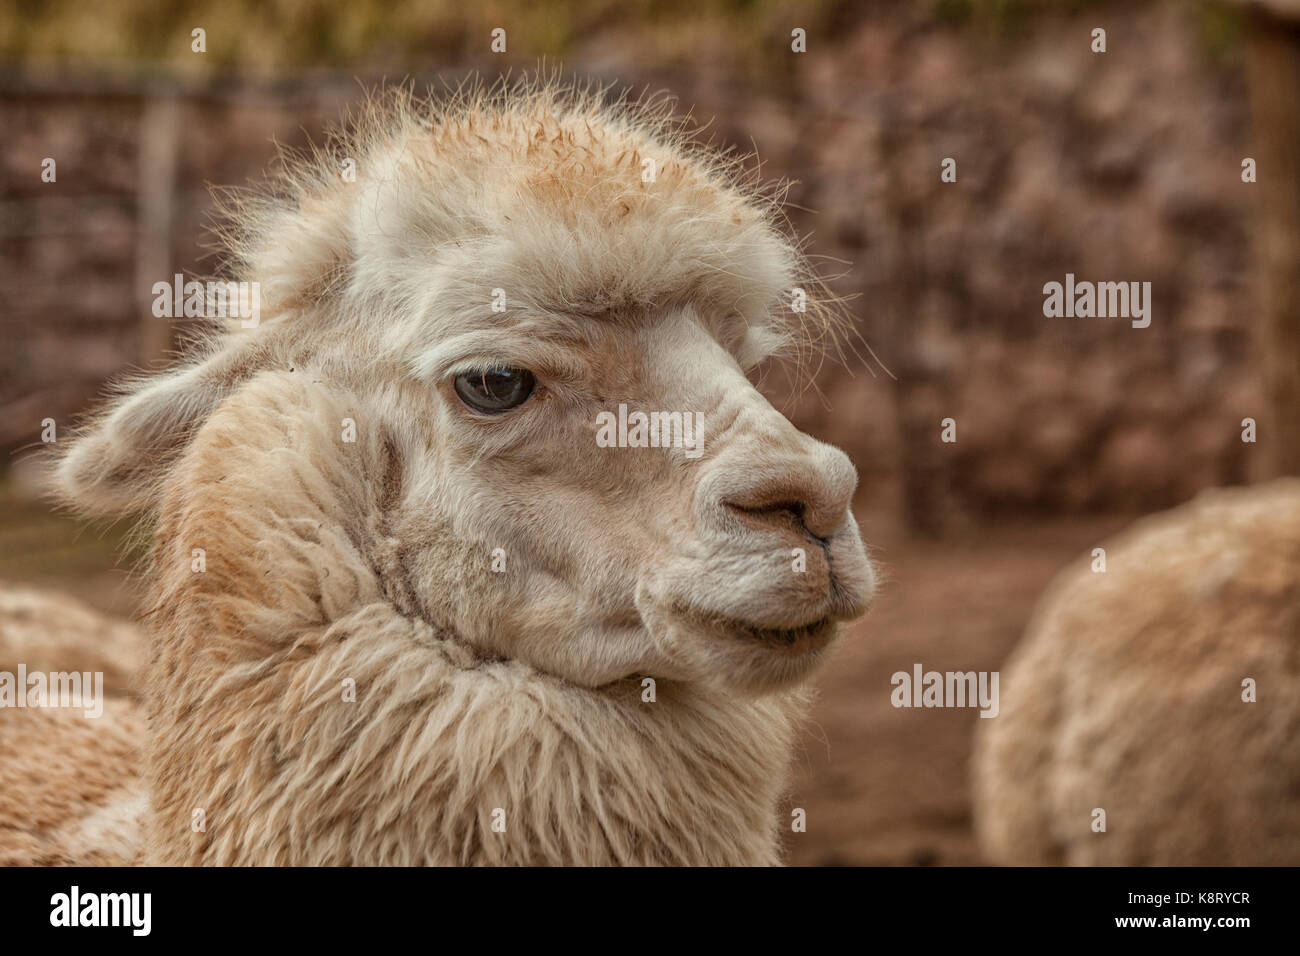 Llama in Peru Stock Photo